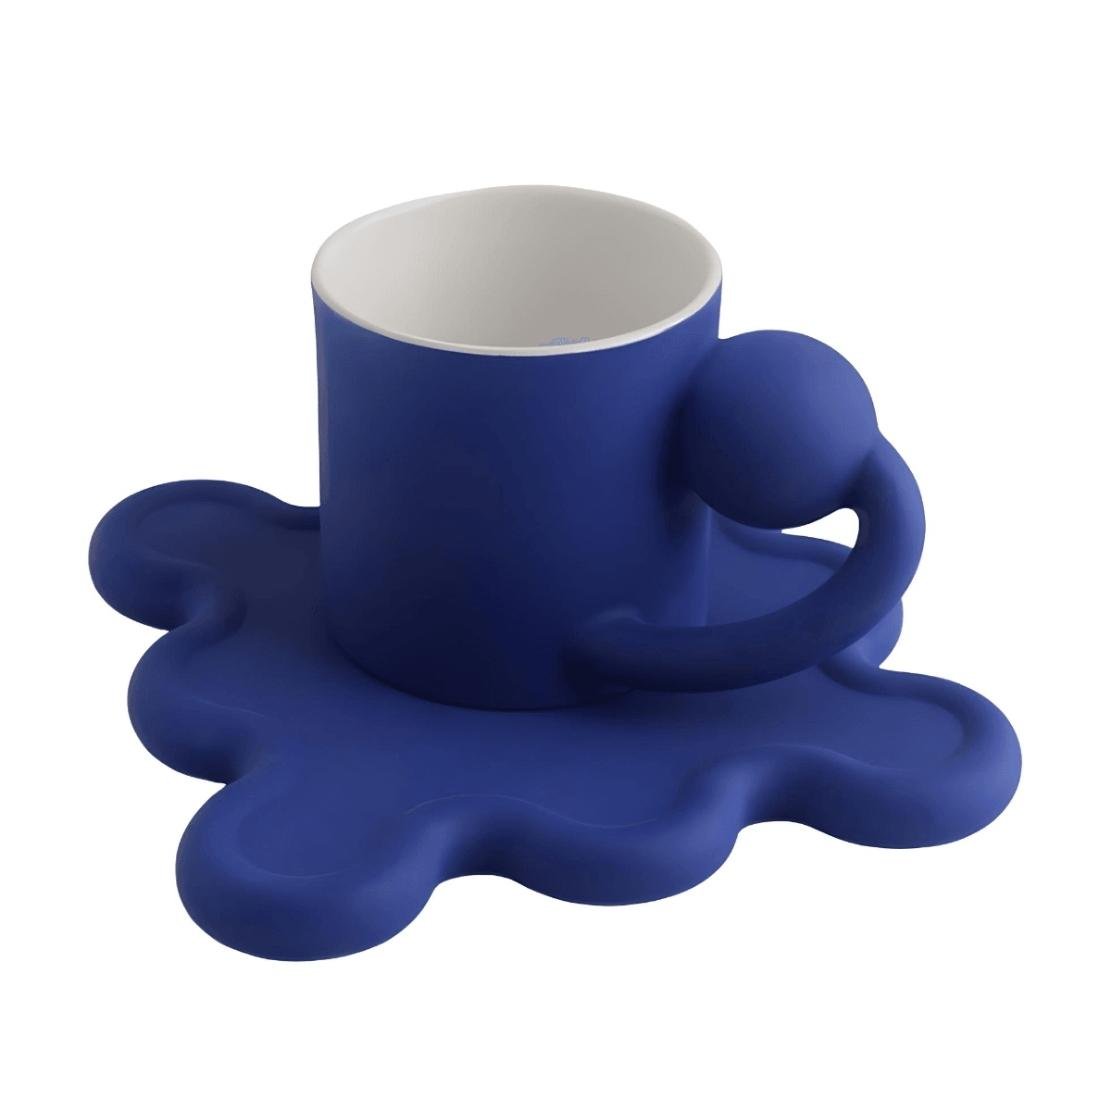 Blue ball handle mug with wavy wiggle saucer